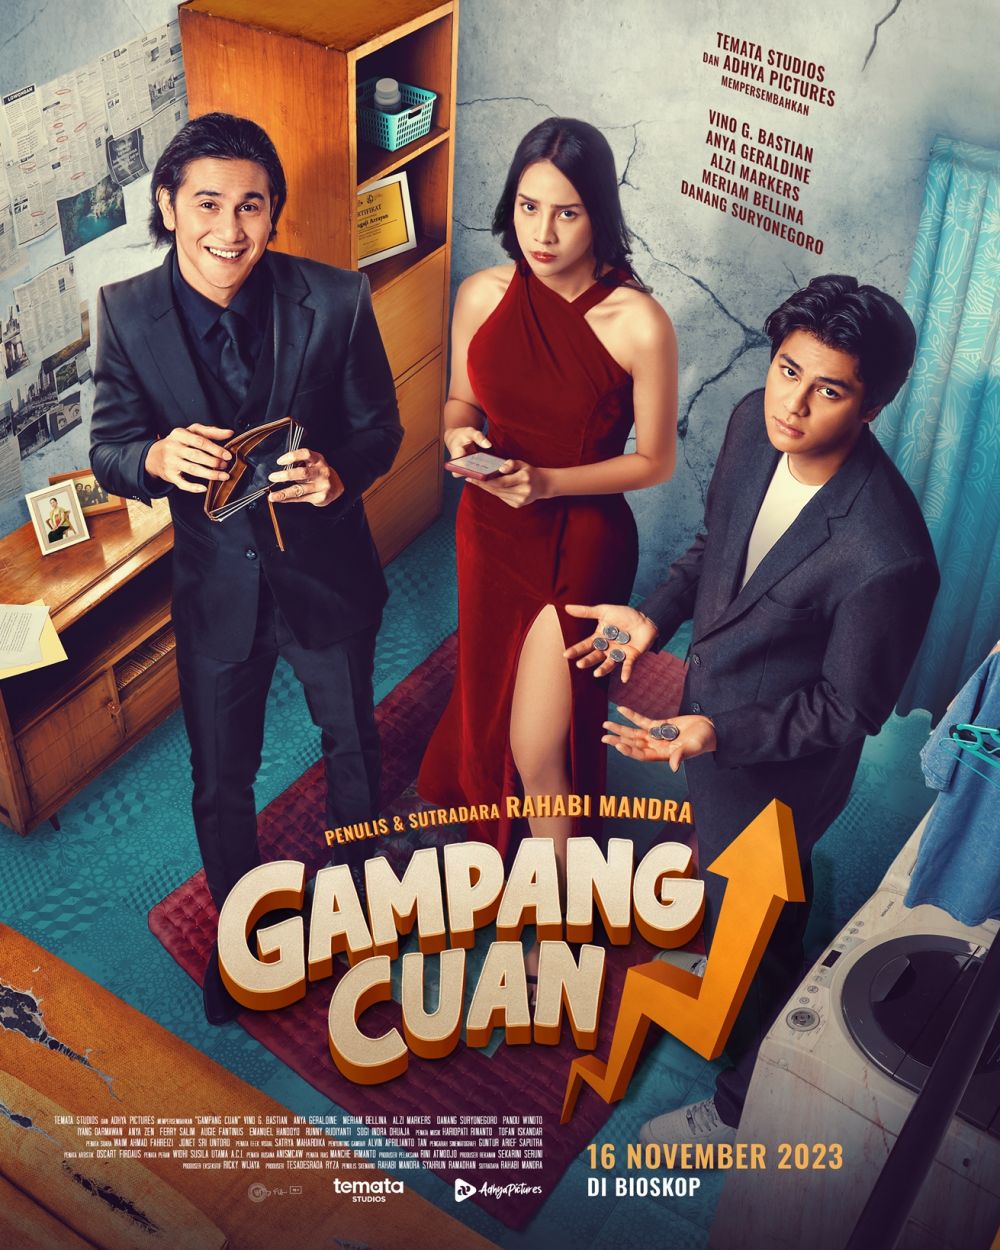 Trailer dan poster film Gampang Cuan resmi dirilis, penggemar komedi wajib nonton